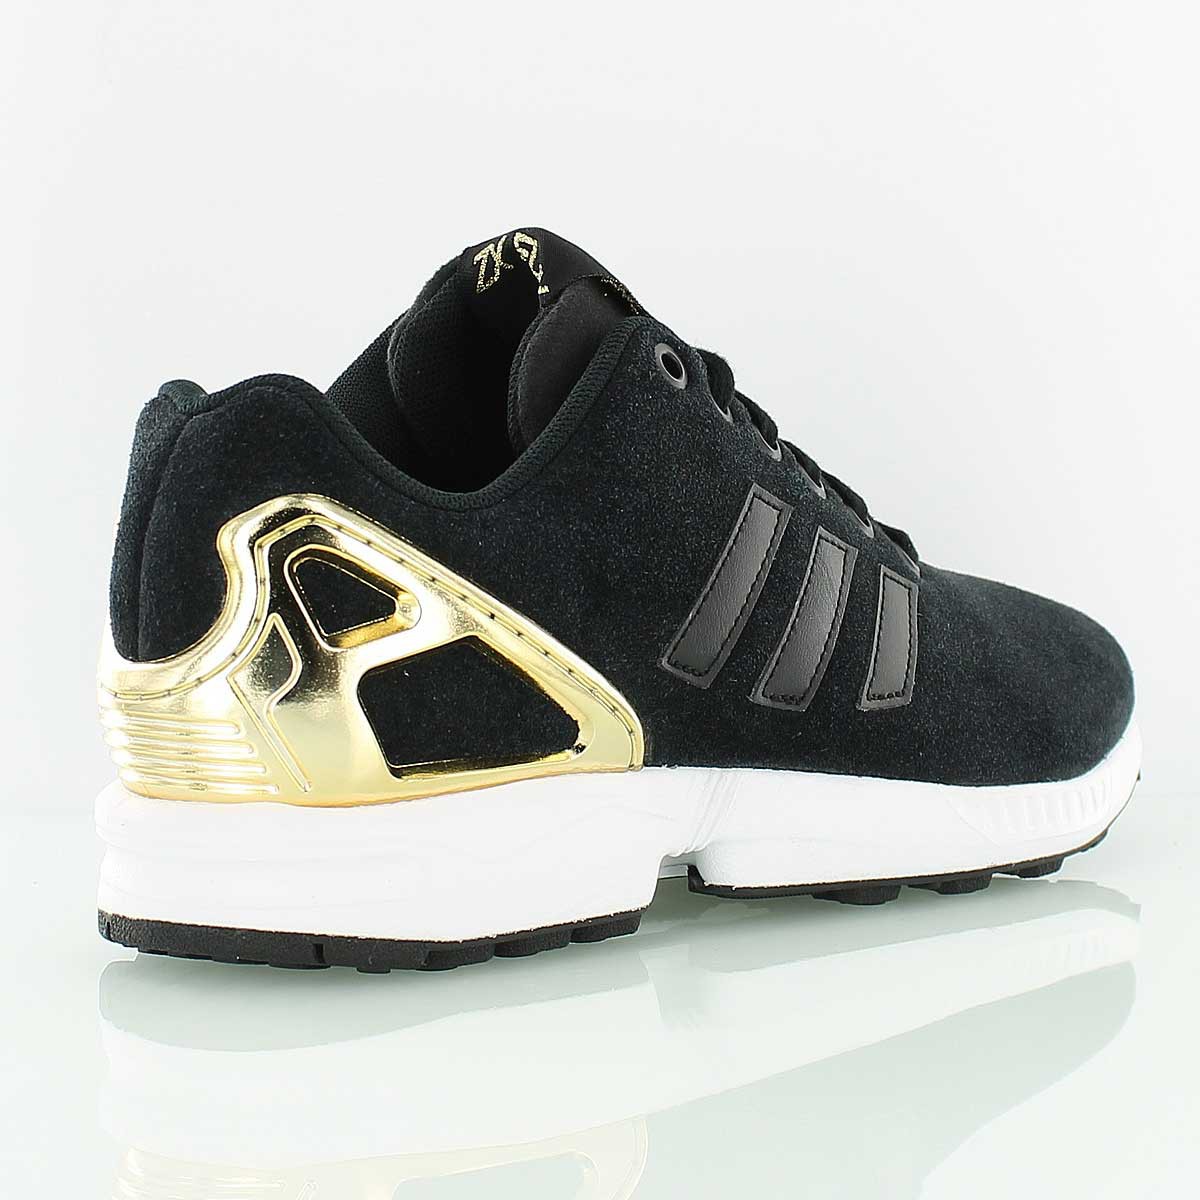 adidas zx flux noir gold